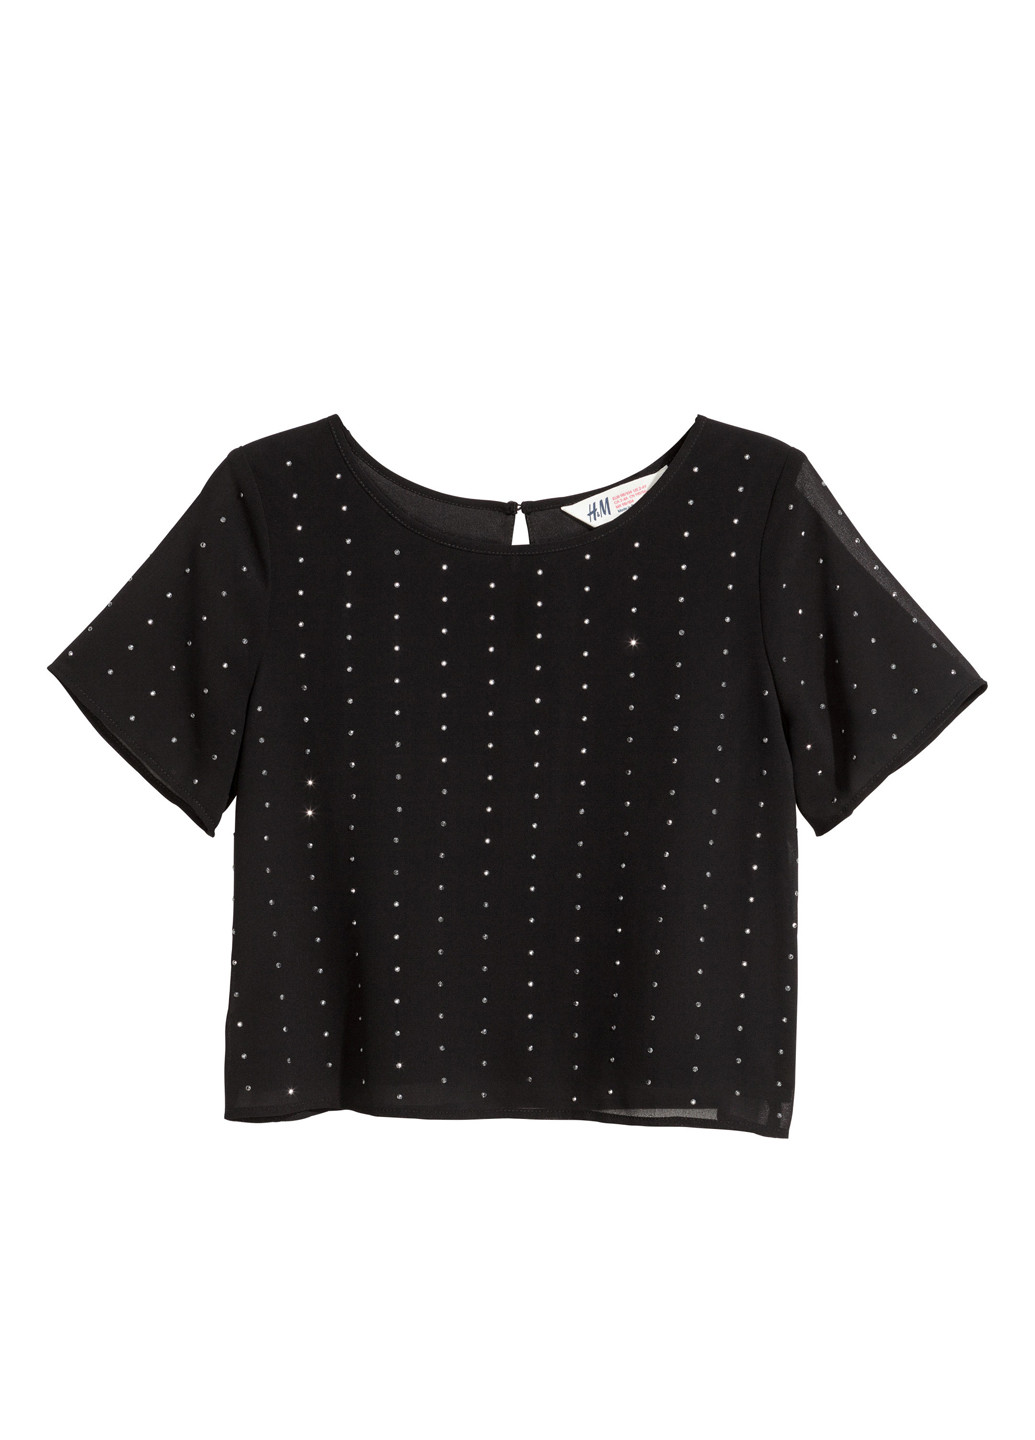 Черная в горошек блузка с коротким рукавом H&M летняя